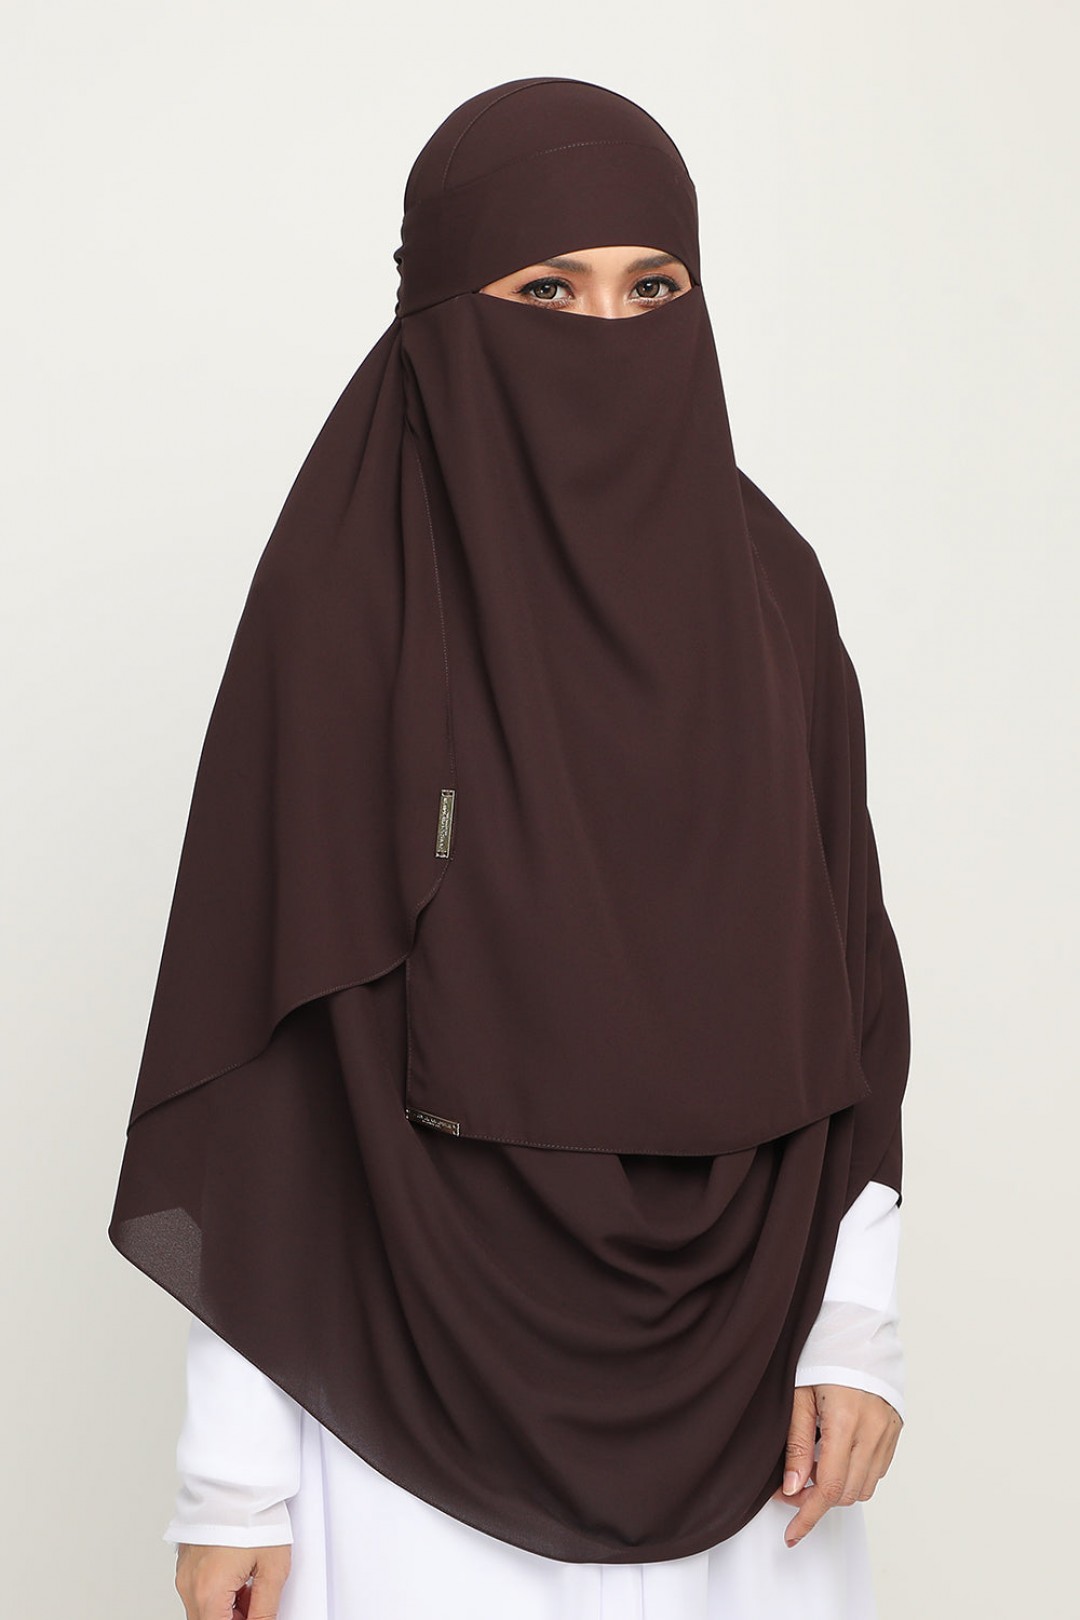 Niqab Coco Wood